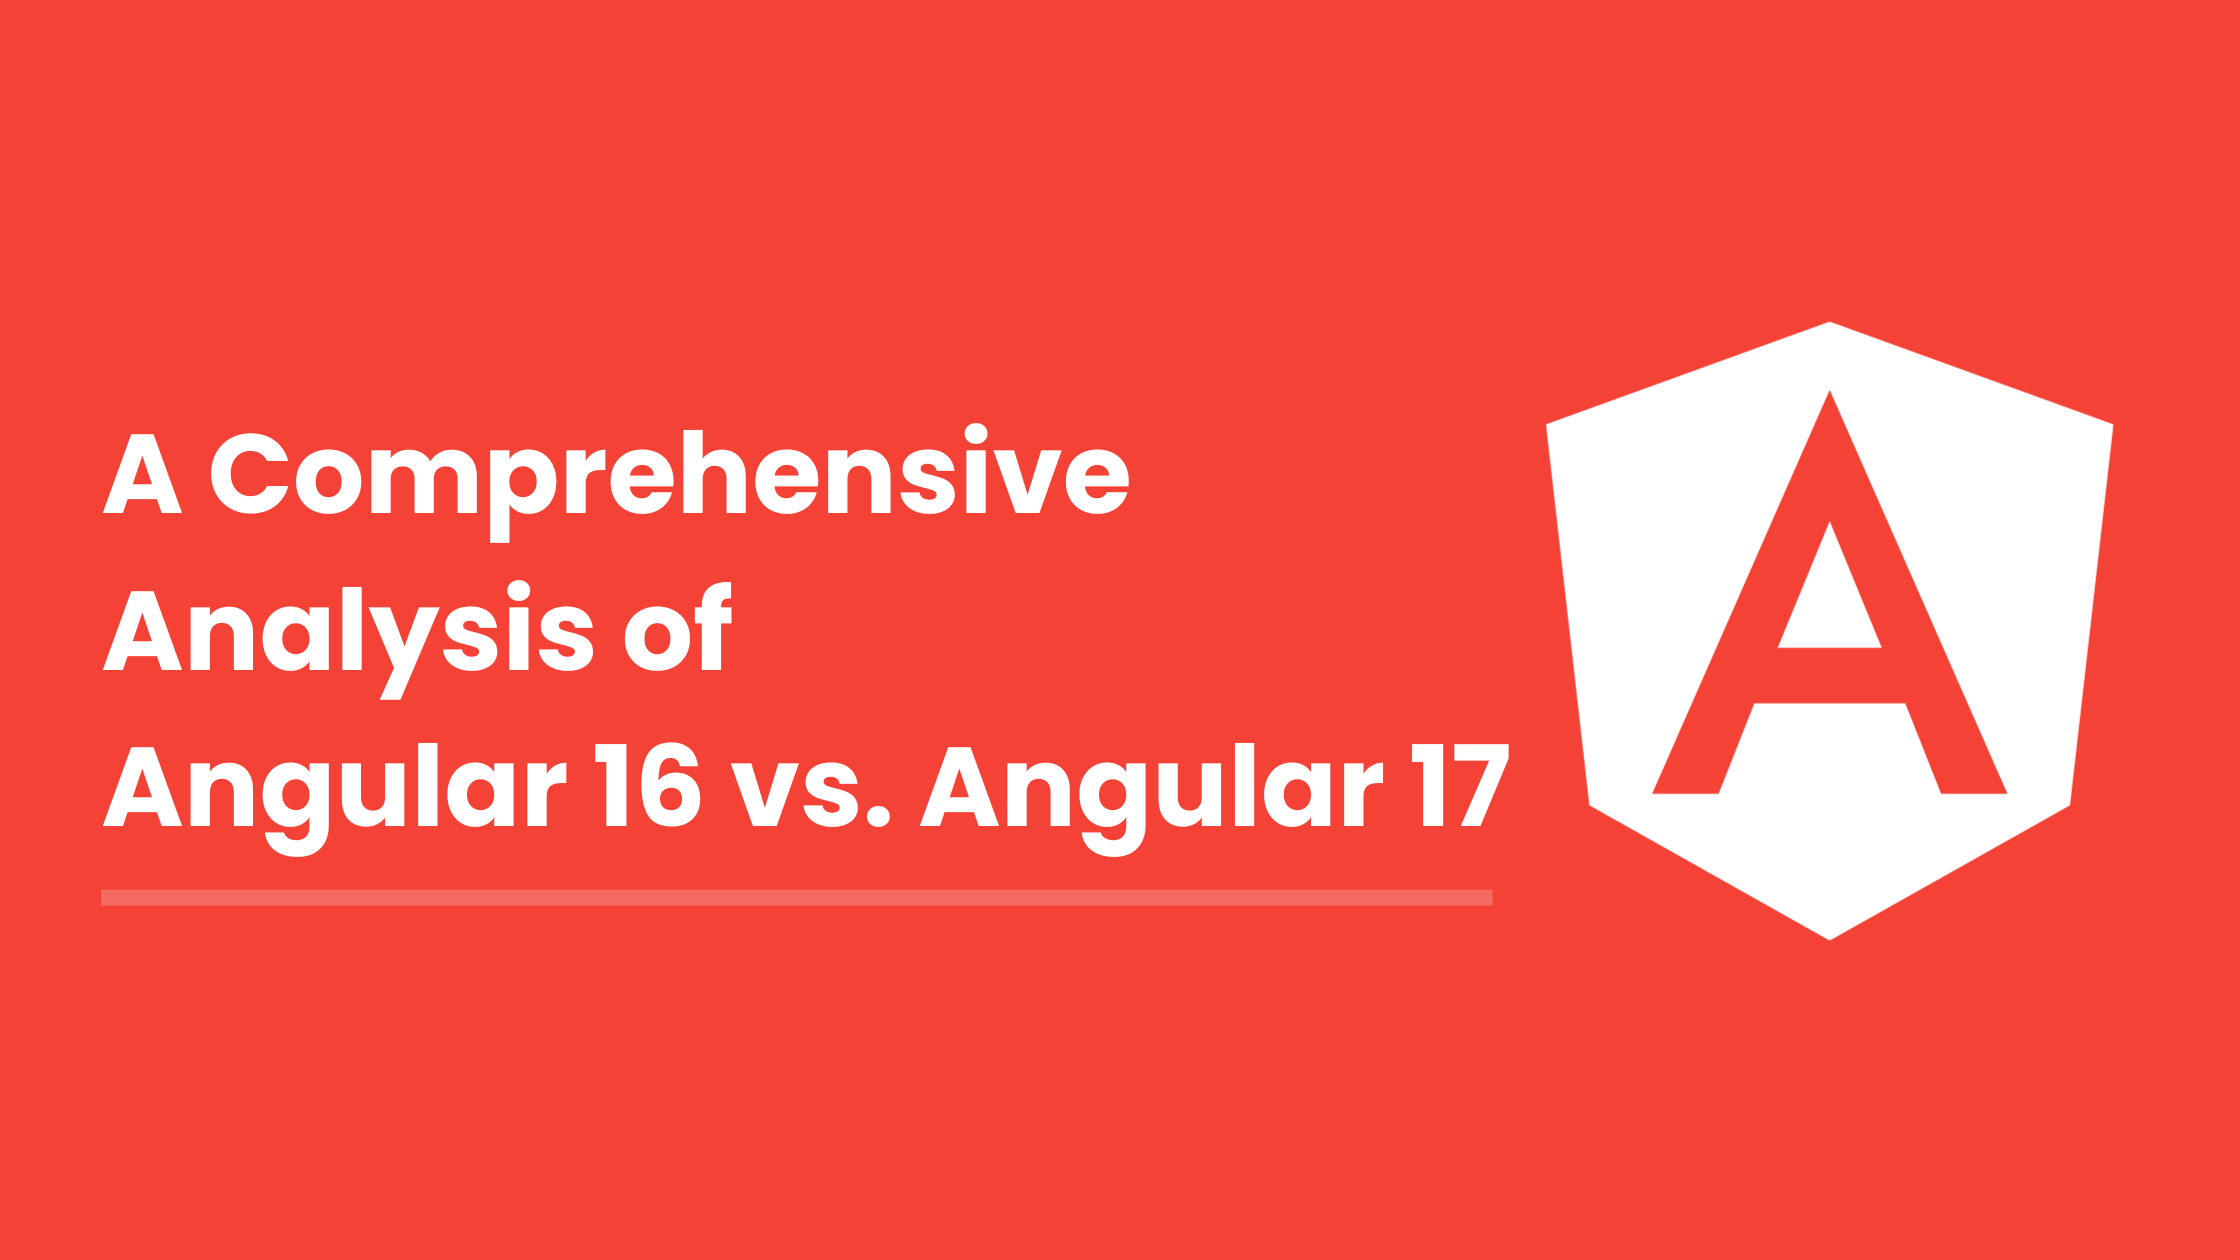 A Comprehensive Analysis of Angular 16 vs. Angular 17